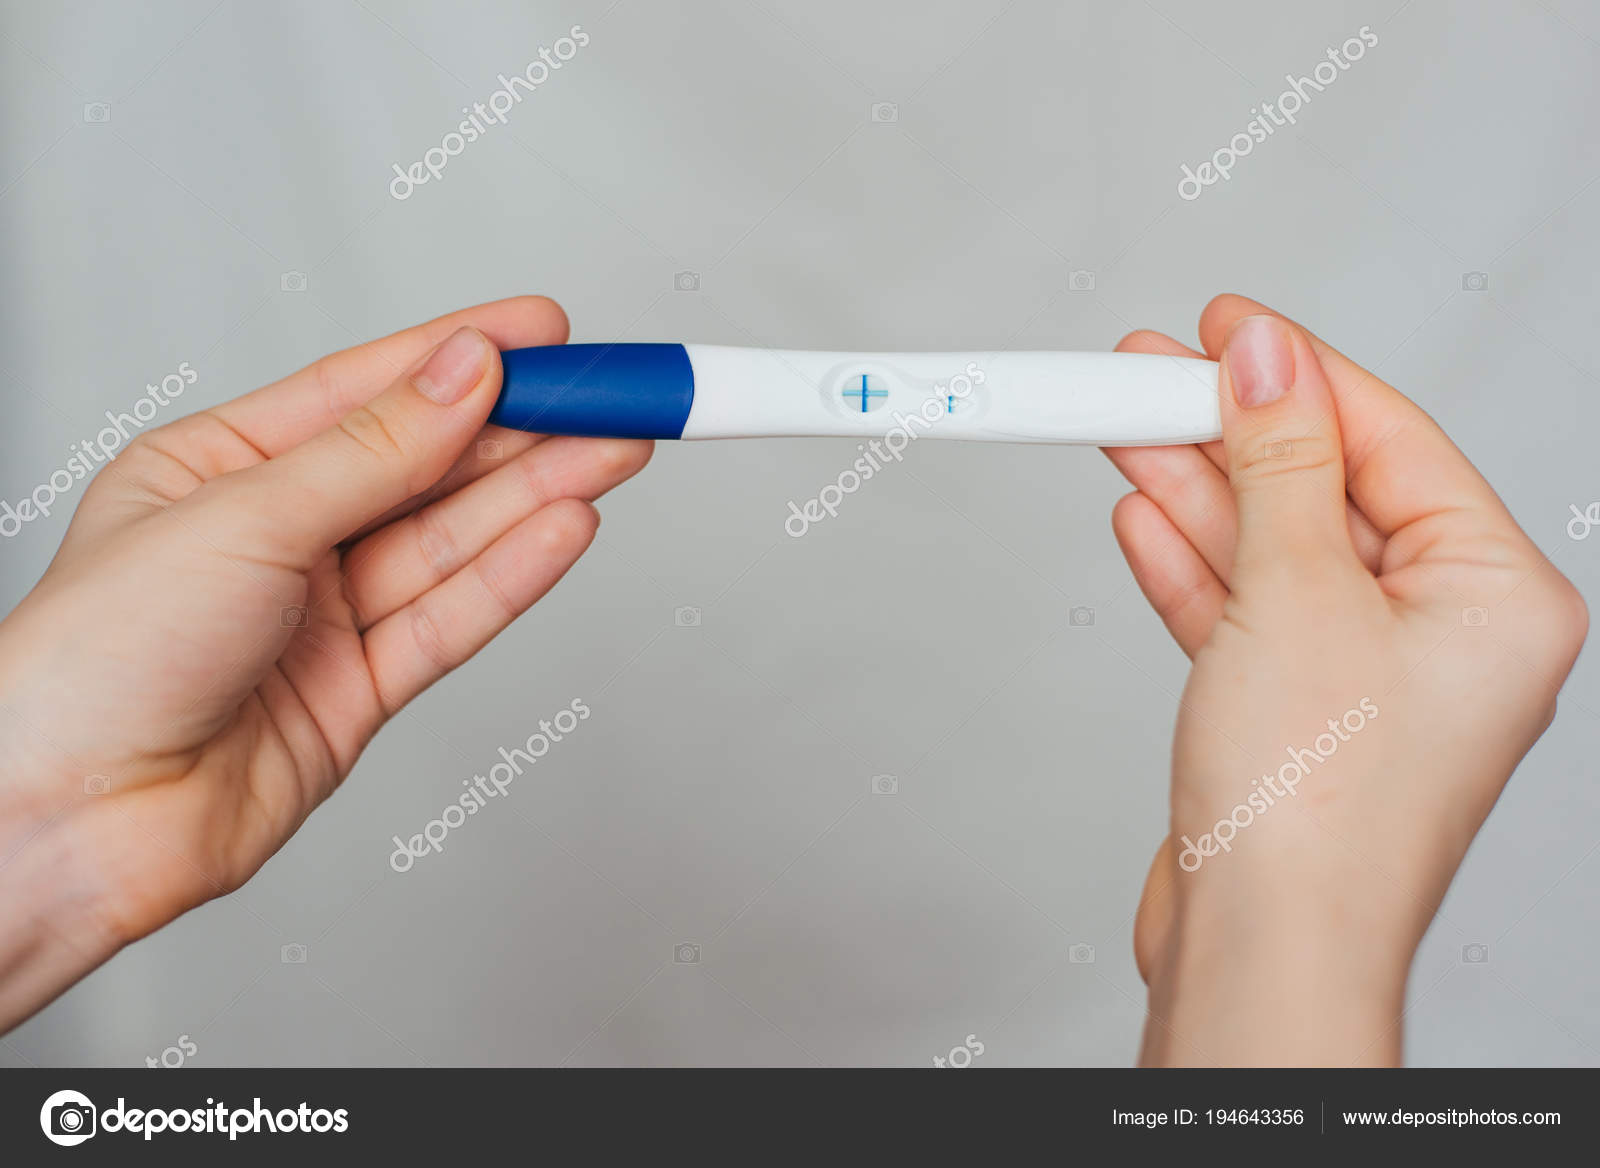 Тест на беременность в руках у девушки. Тест на беременность в руке. Тест на беременность на ладони. Тест на беременность в руках у девушки положительный. Тест на беременность фломастер.